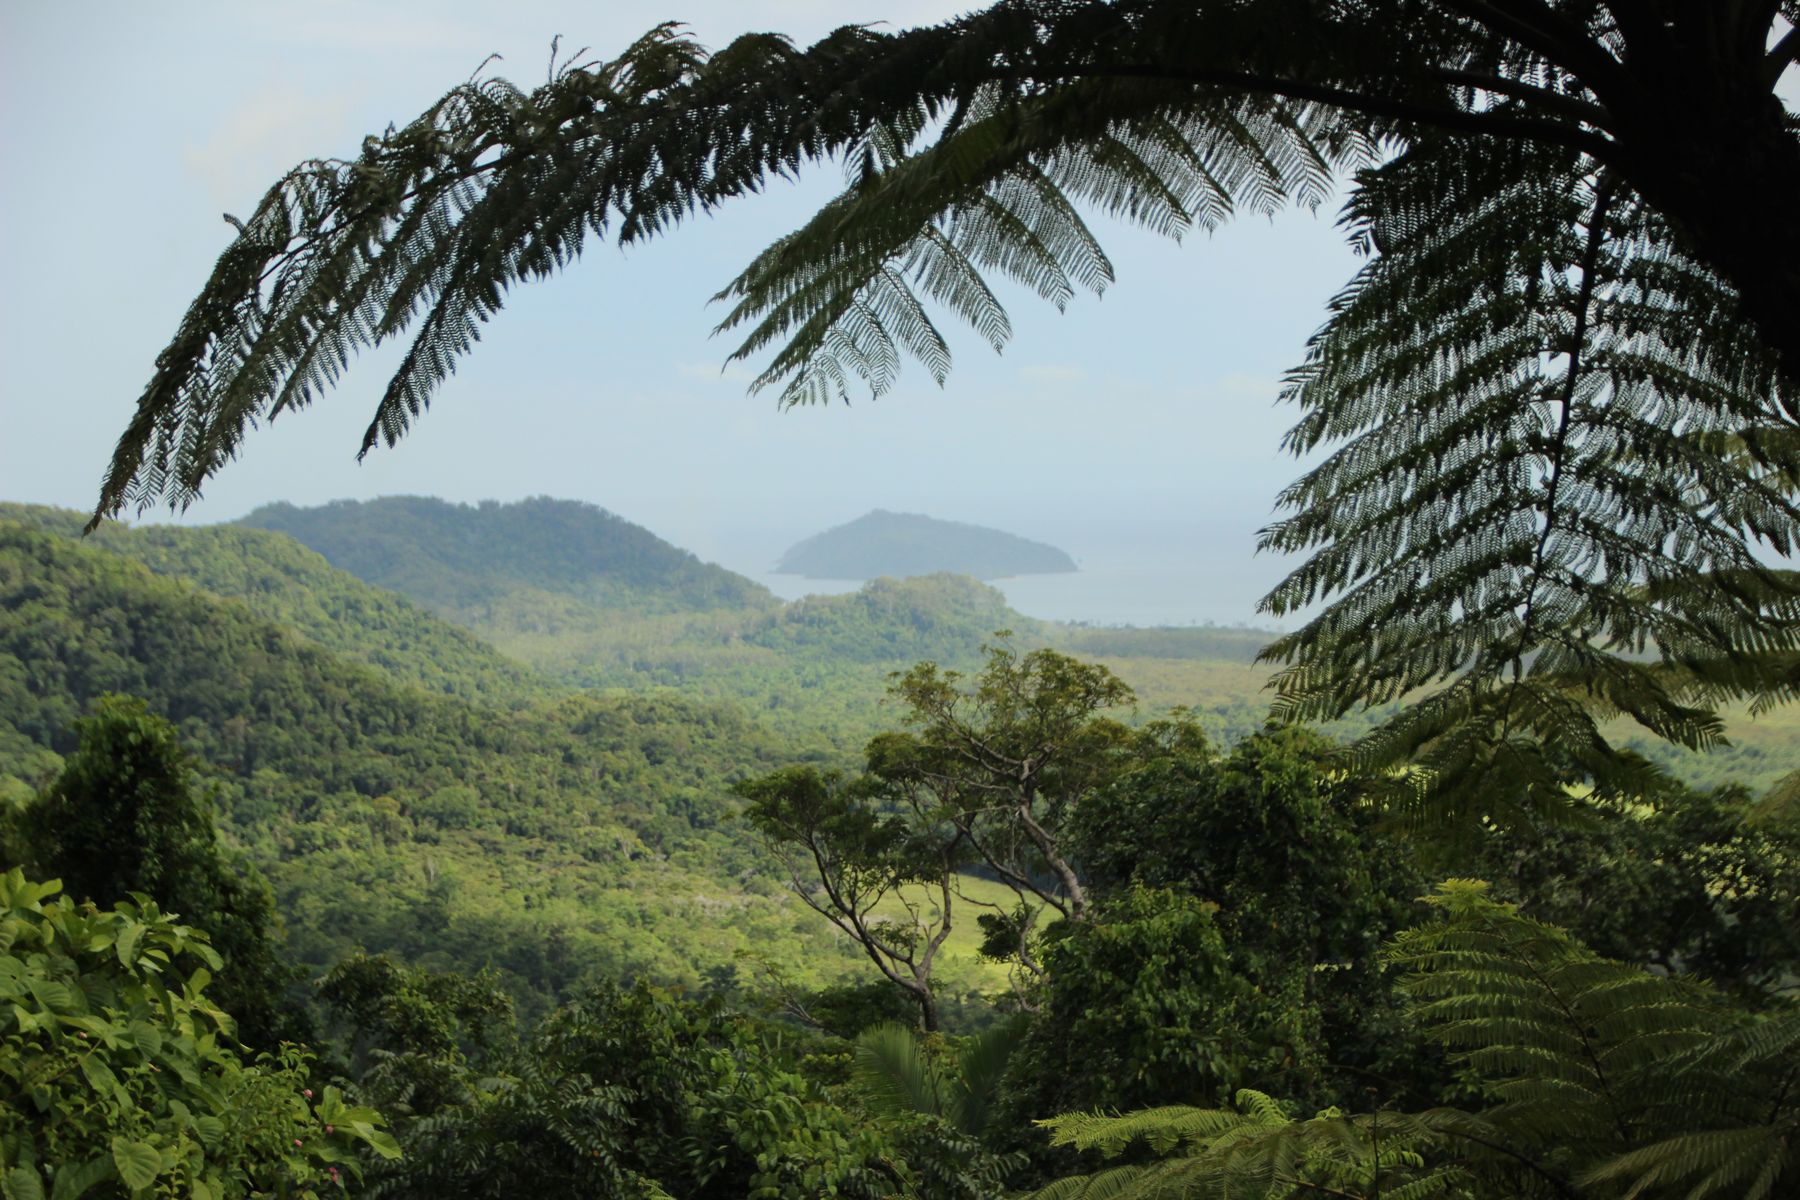 le Costa Rica possède de nombreux parcs nationaux permettant aux seniors d'y faire des randonnées 